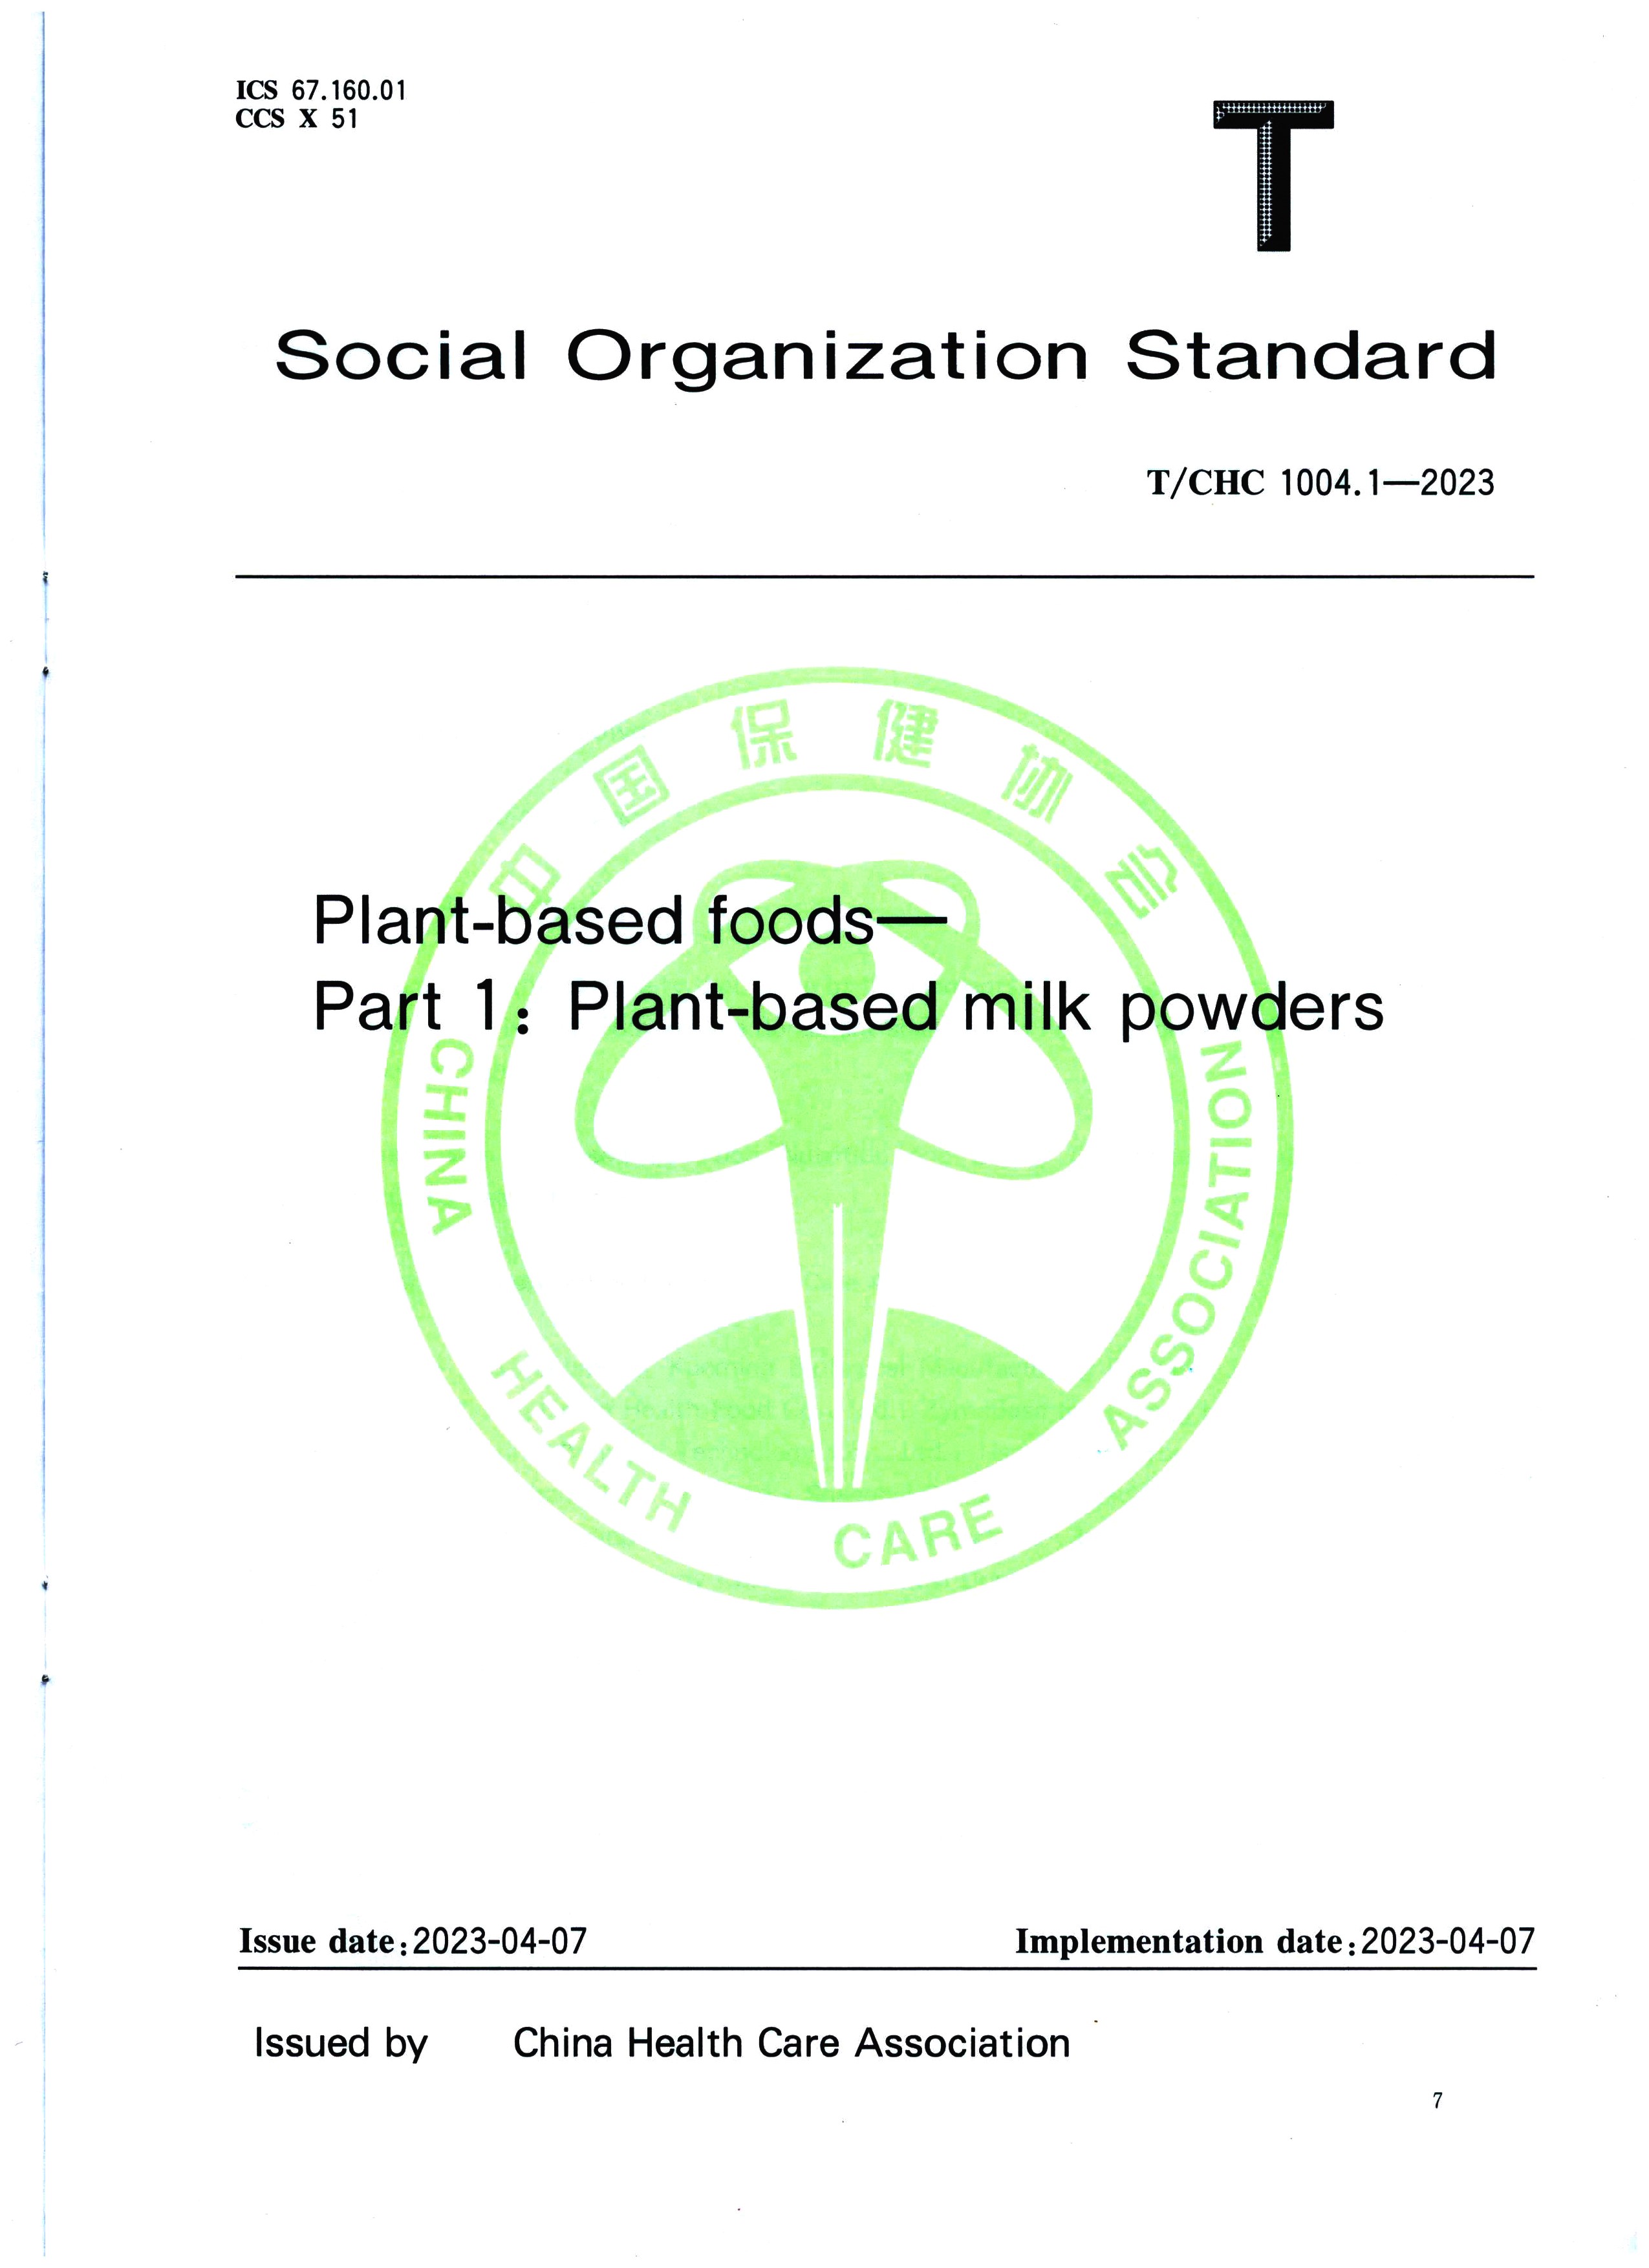 มาตรฐานกลุ่มของ 'อาหารจากพืช ตอนที่ 1 นมผงจากพืช' ที่เผยแพร่โดย China Standards Press ได้รับการเผยแพร่อย่างเป็นทางการ